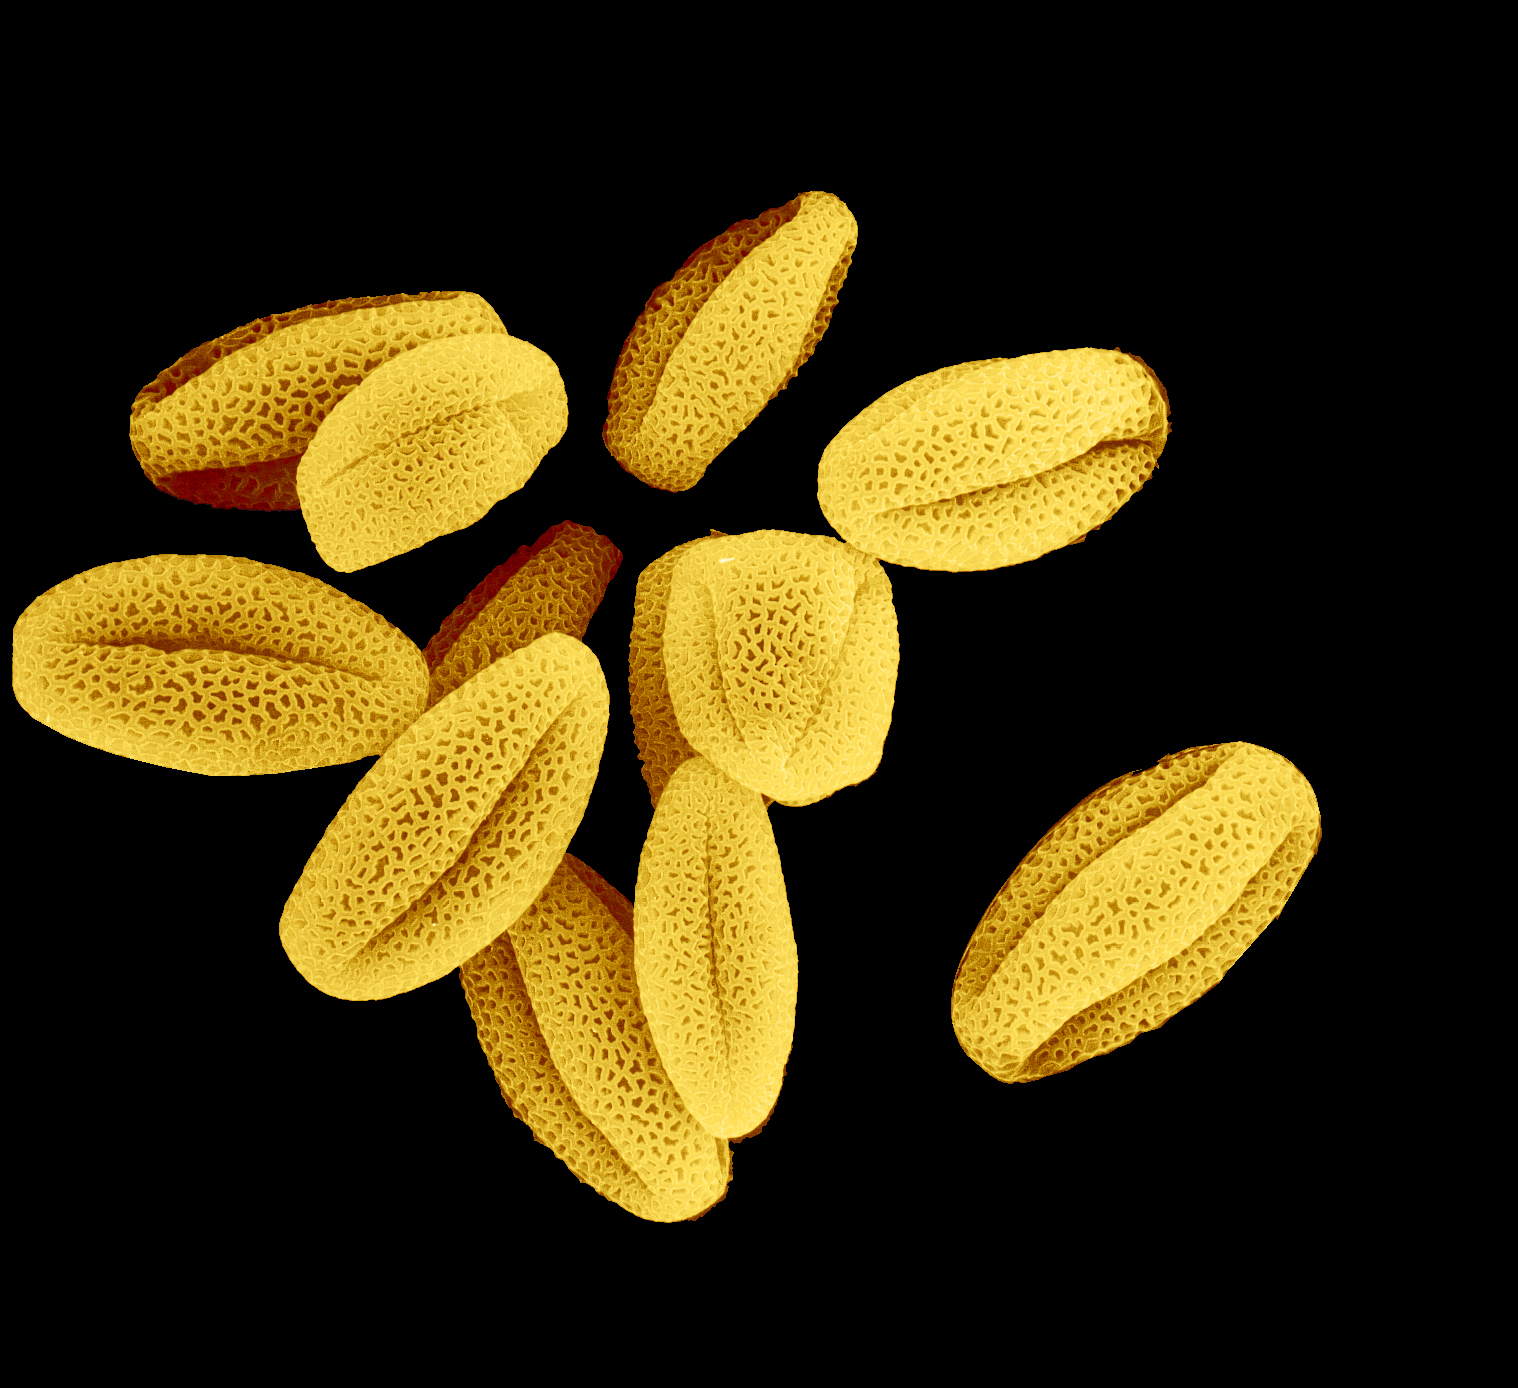 Пыльца сайт. Микрофотография пыльцы покрытосеменных. Пыльца цветковых растений. Пыльца сосны микрофотография. Пыльца растений под микроскопом.